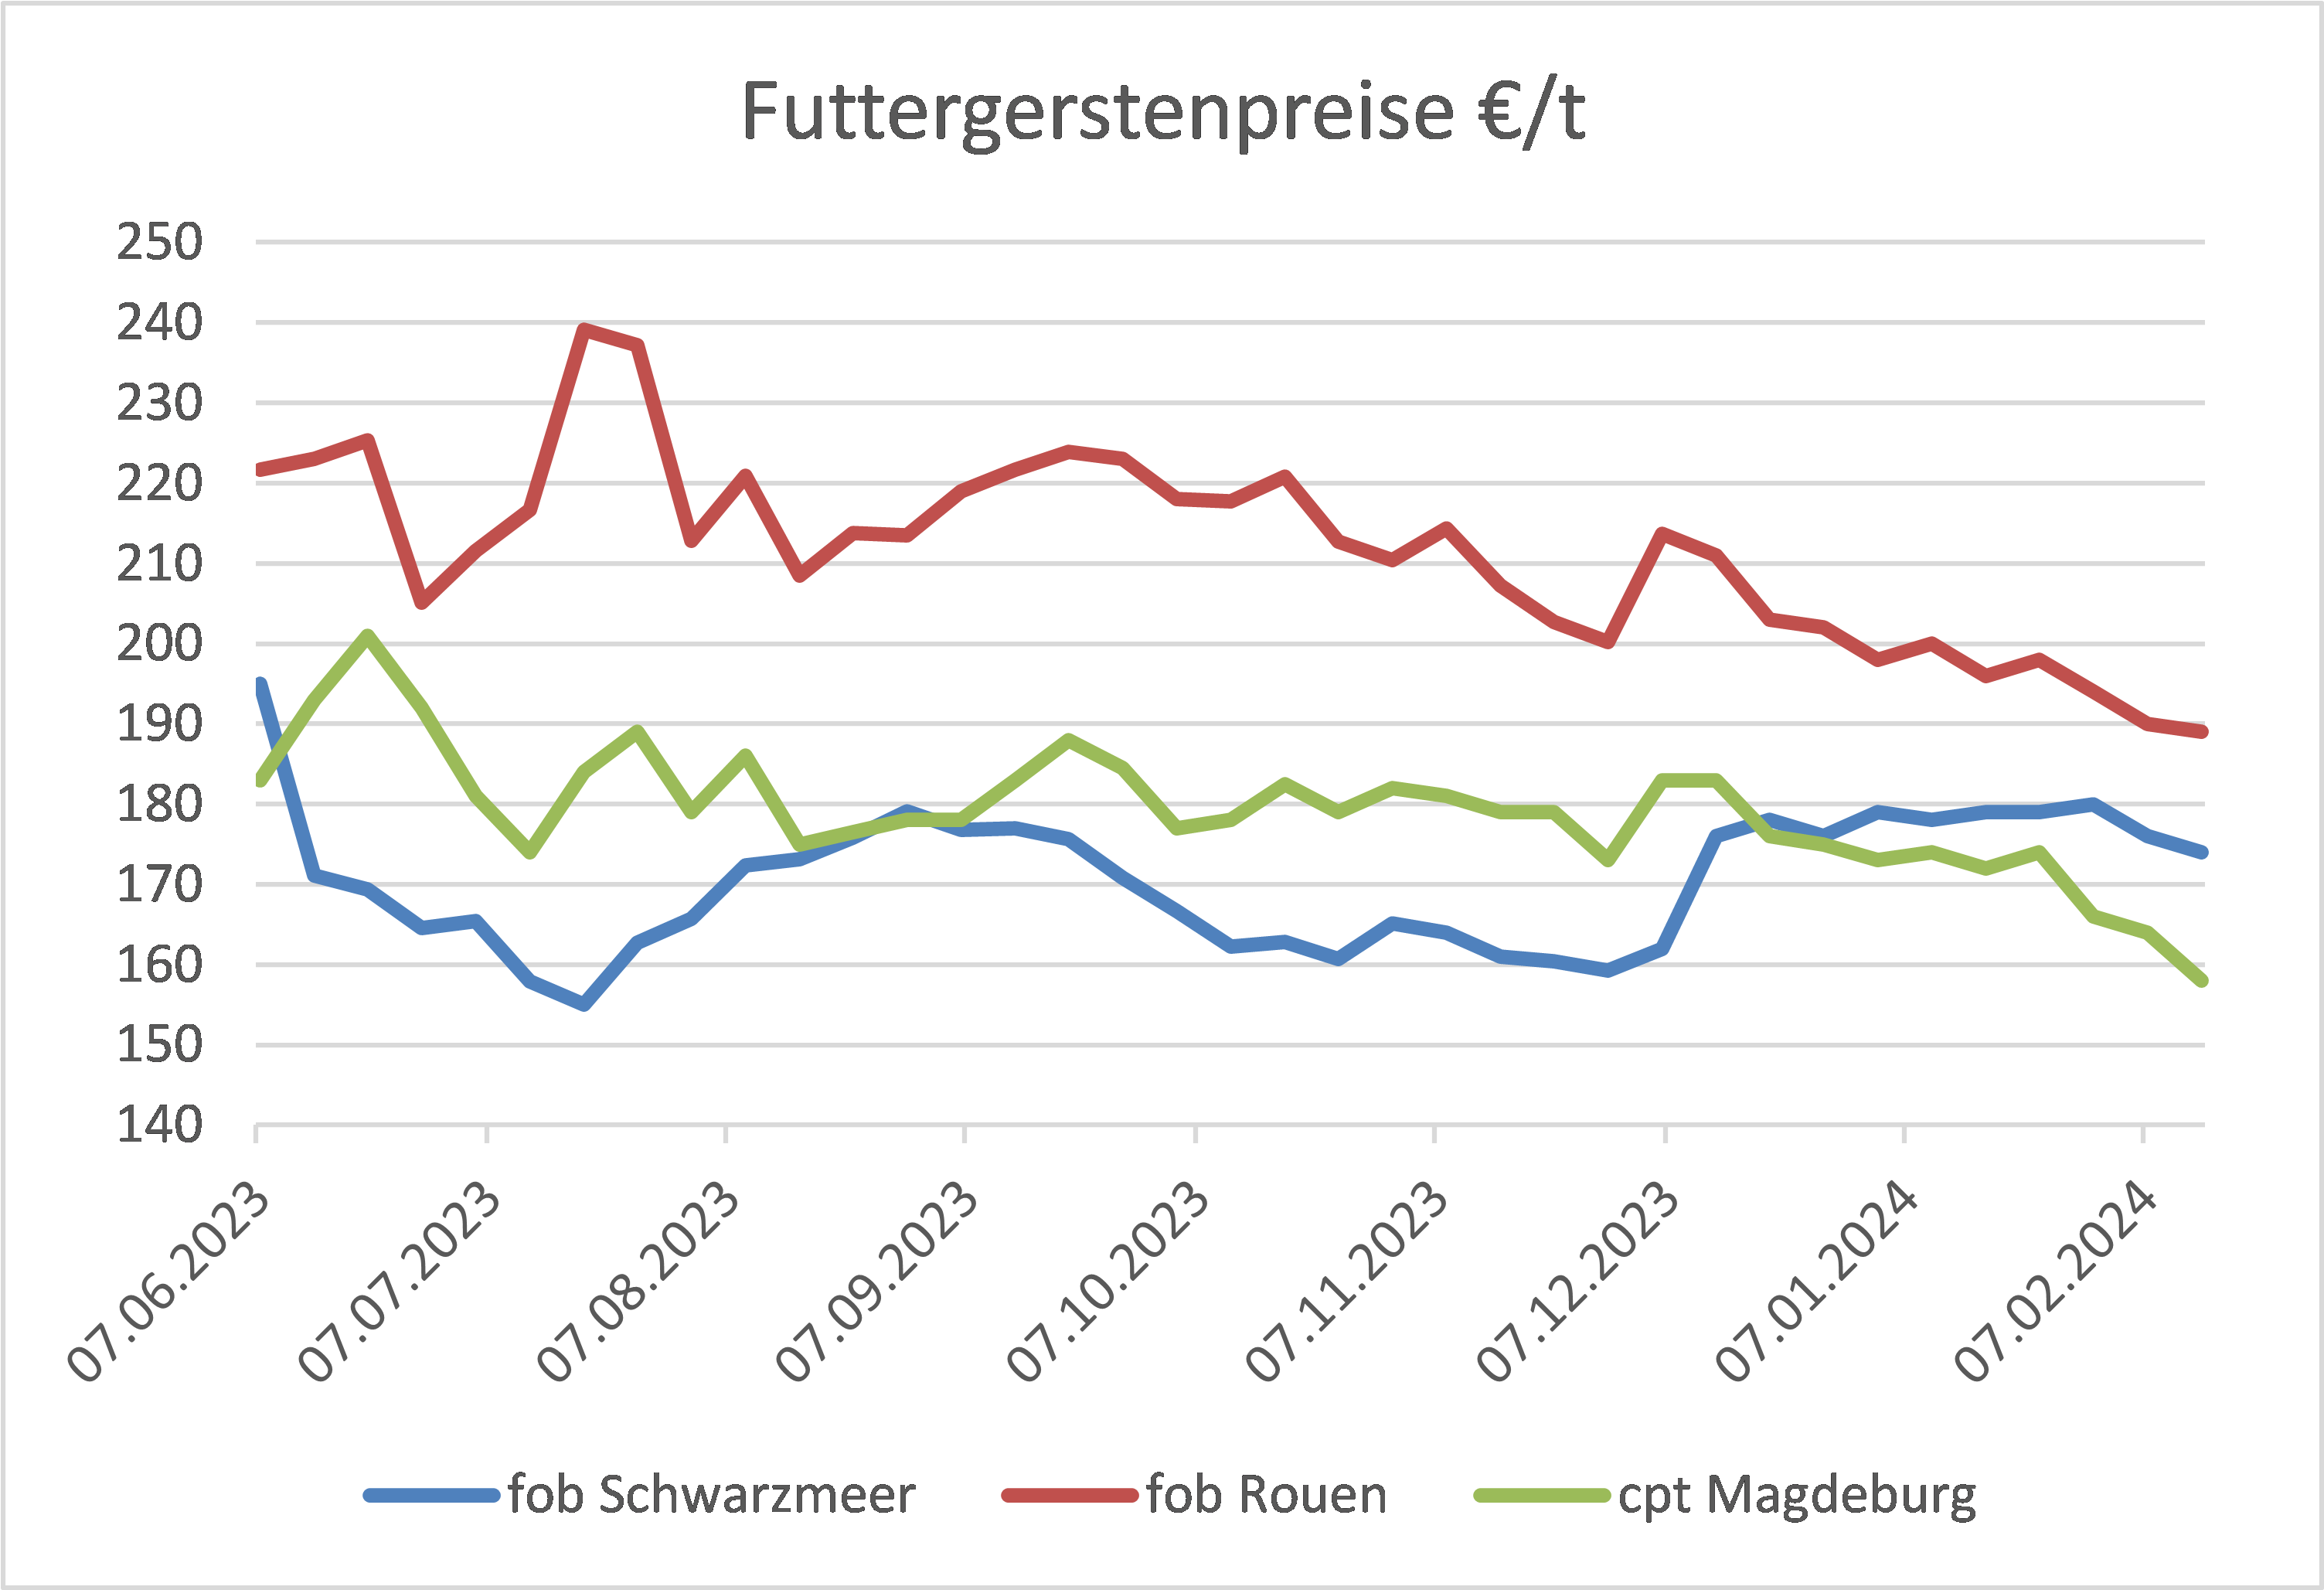 Vergleichende Darstellung der Futtergerstenpreise zwischen fob Schwarzmeer, fob Rouen und cpt Magdeburg über mehrere Monate